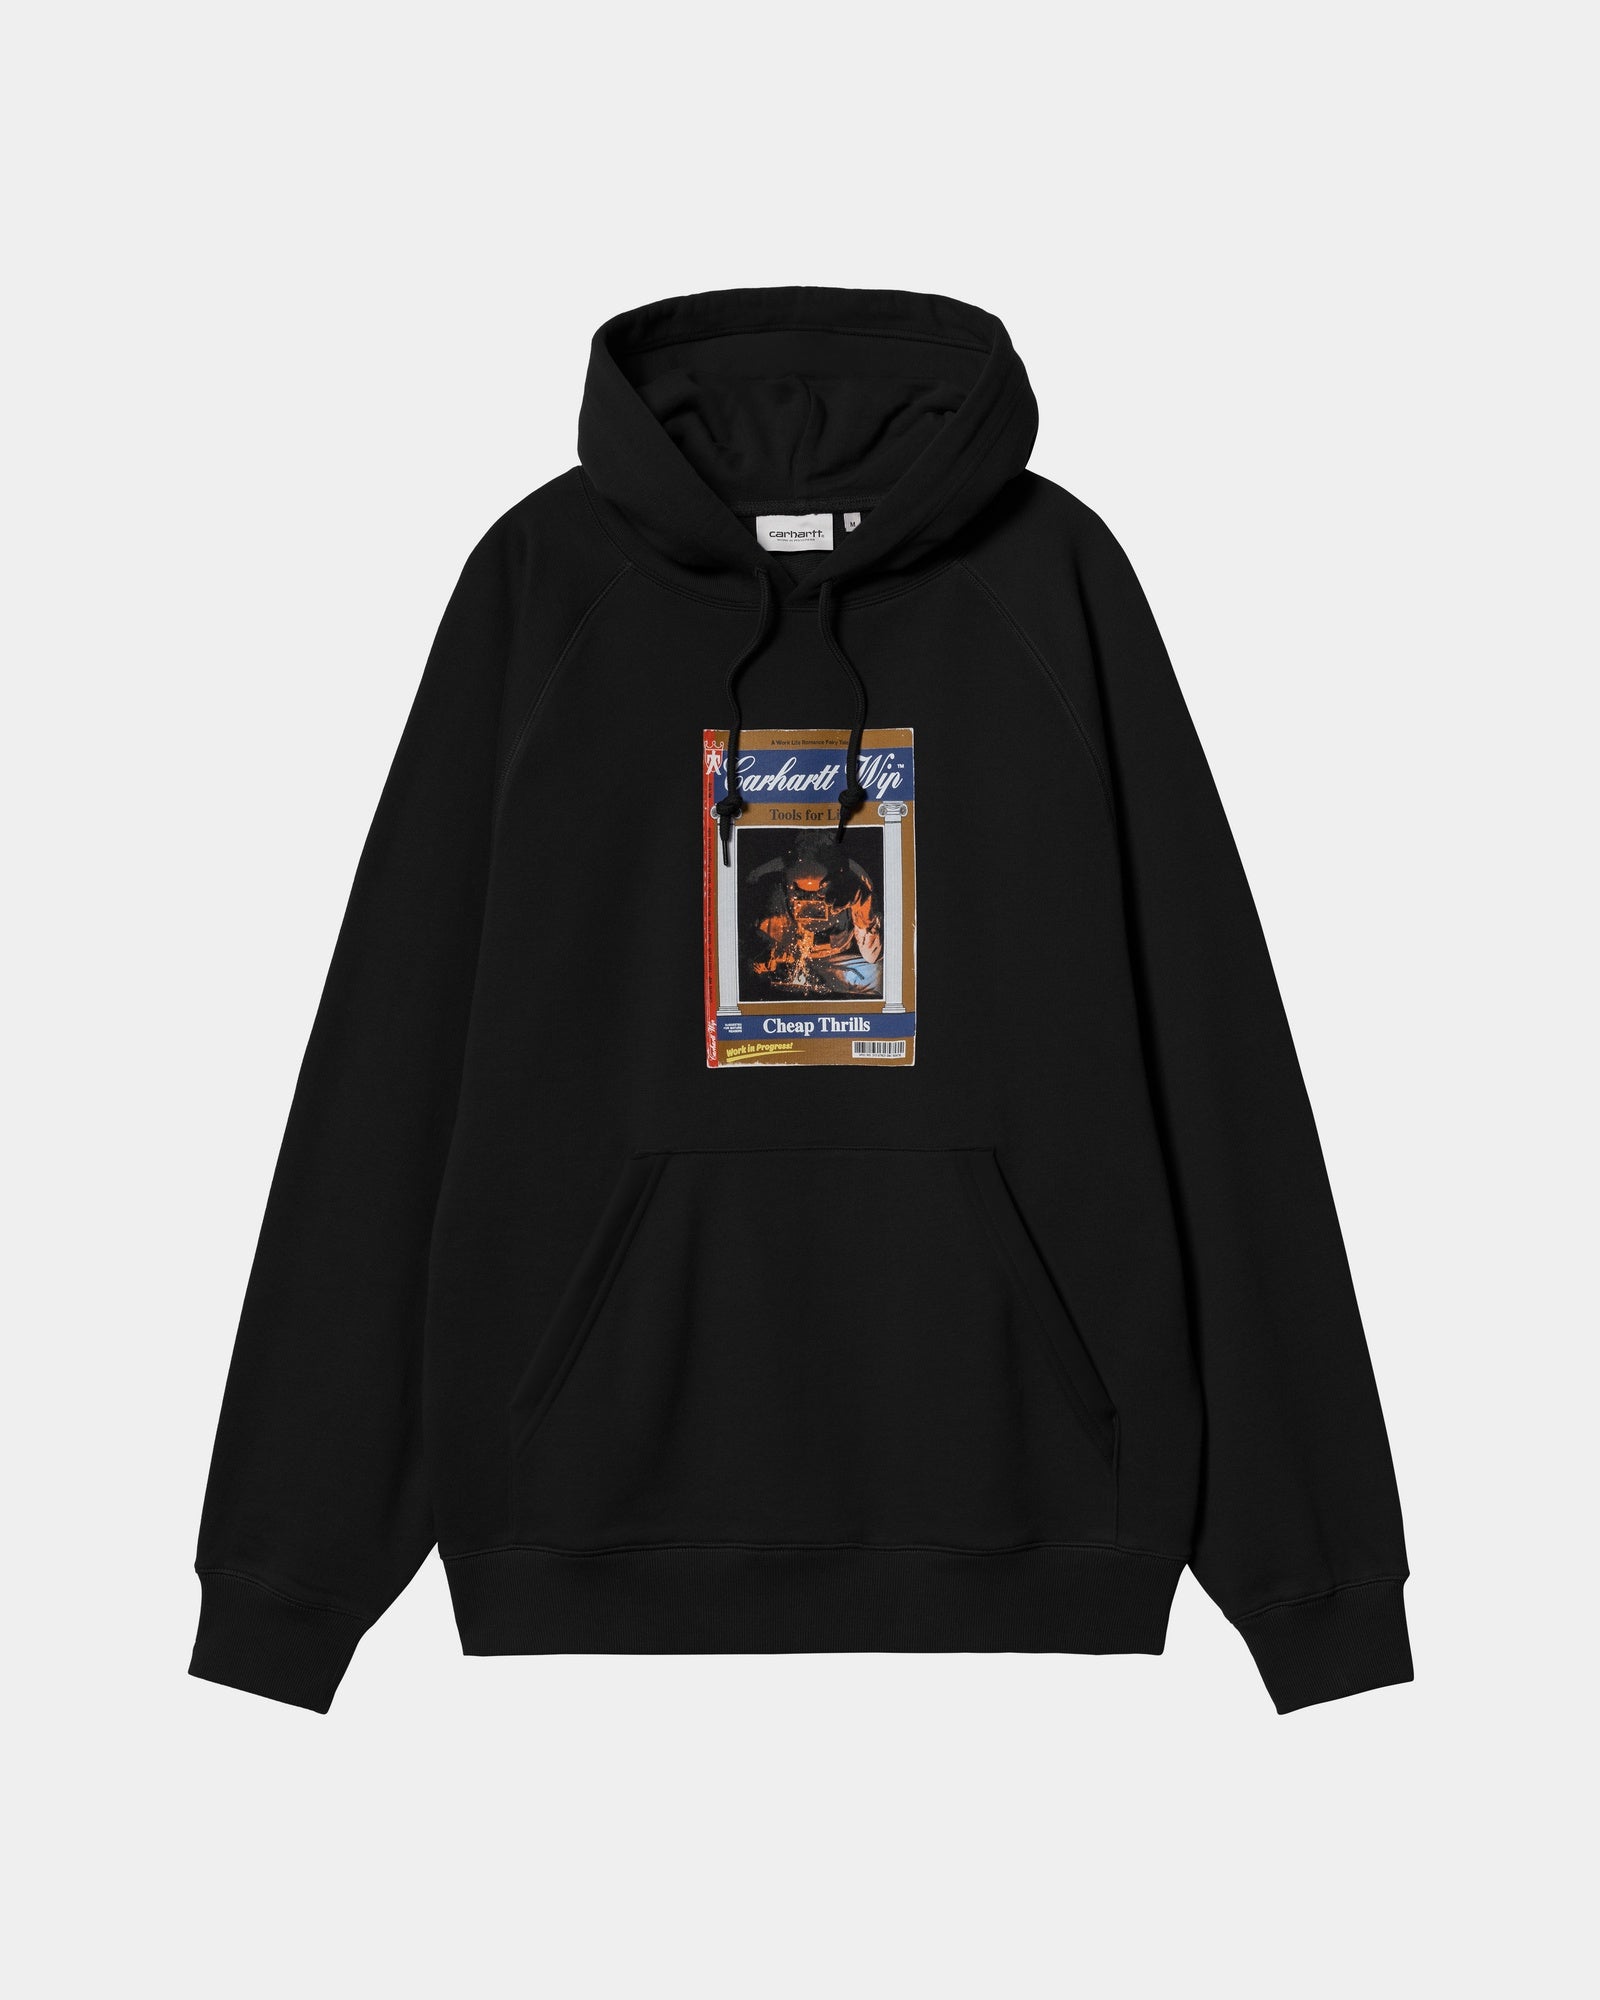 칼하트WIP Carhartt Hooded Cheap Thrills Sweatshirt,Black